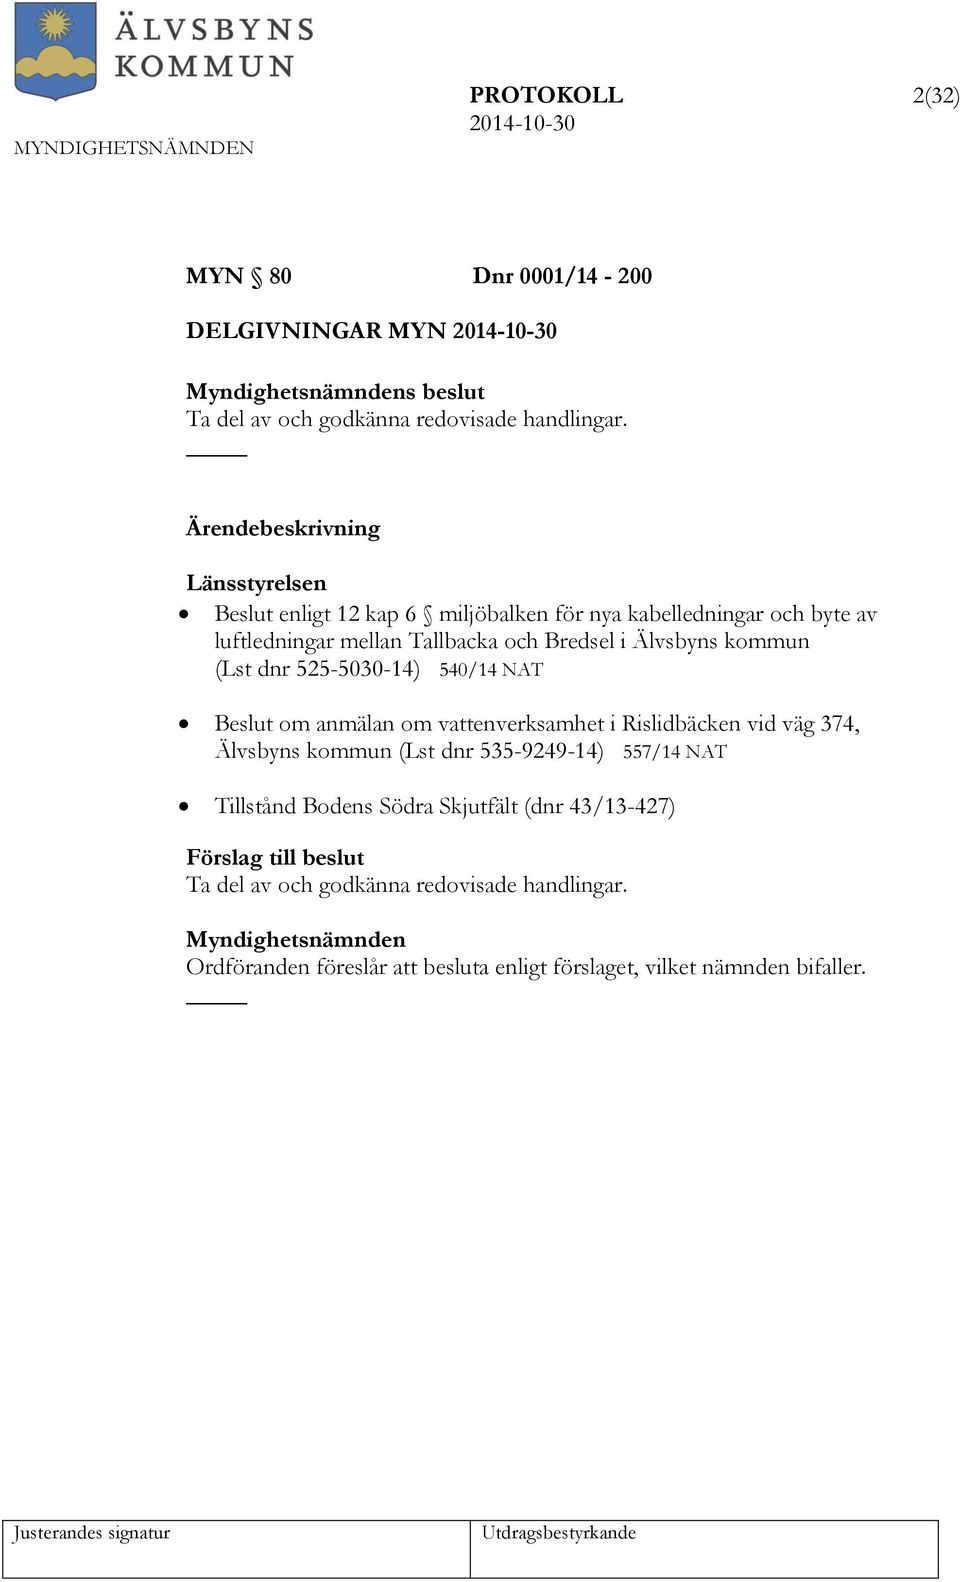 Älvsbyns kommun (Lst dnr 525-5030-14) 540/14 NAT Beslut om anmälan om vattenverksamhet i Rislidbäcken vid väg 374, Älvsbyns kommun (Lst dnr 535-9249-14)